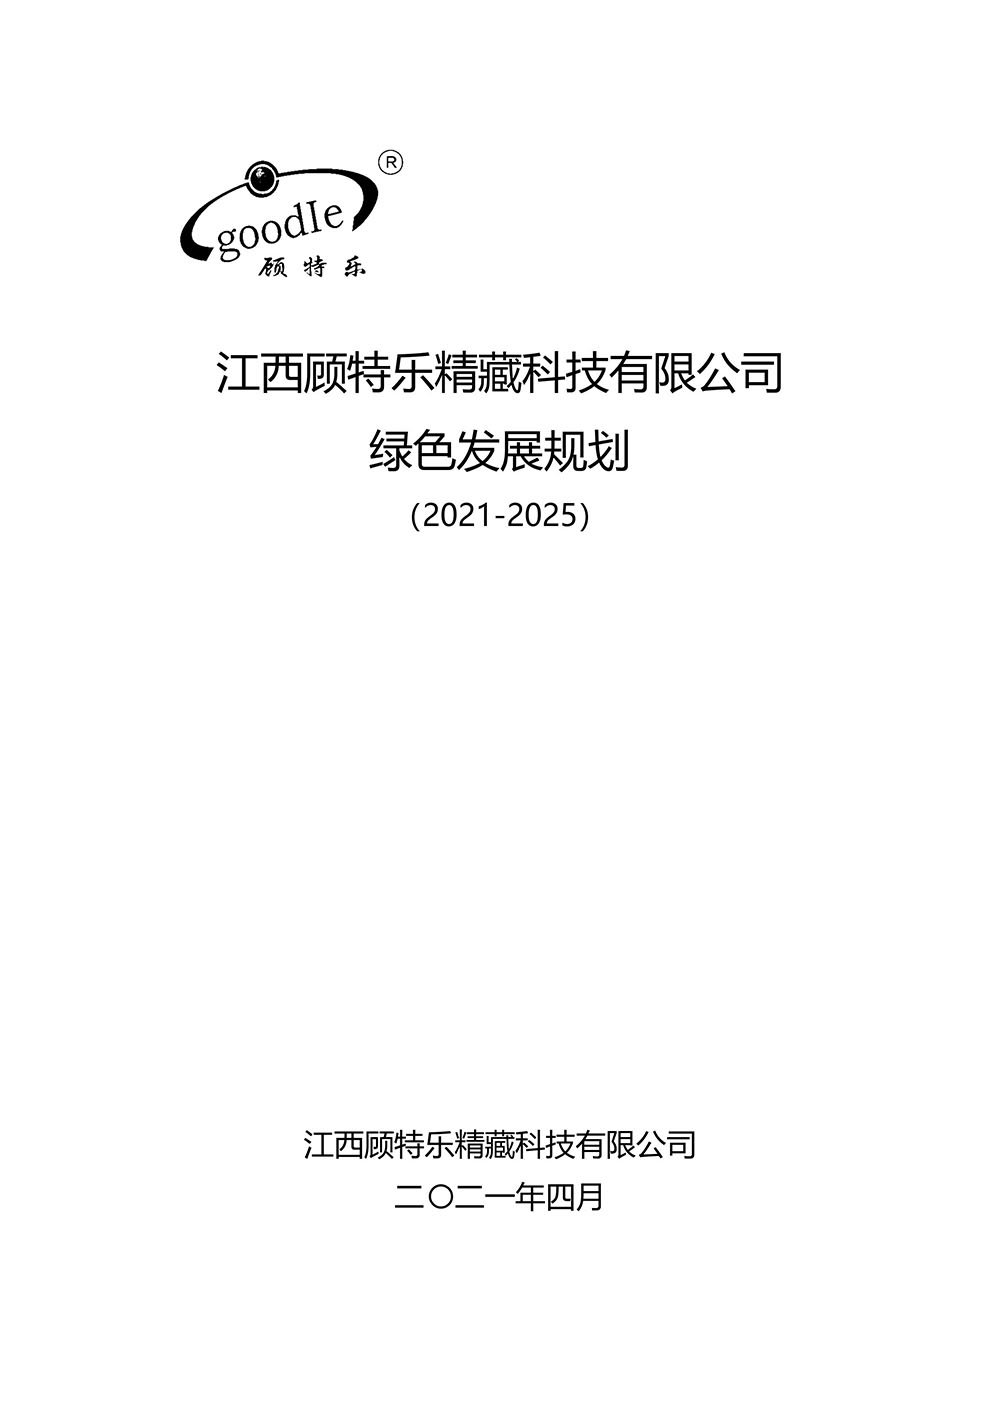 Jiangxi Goodle fine storage technology Co.,Ltd. Green Development Plan